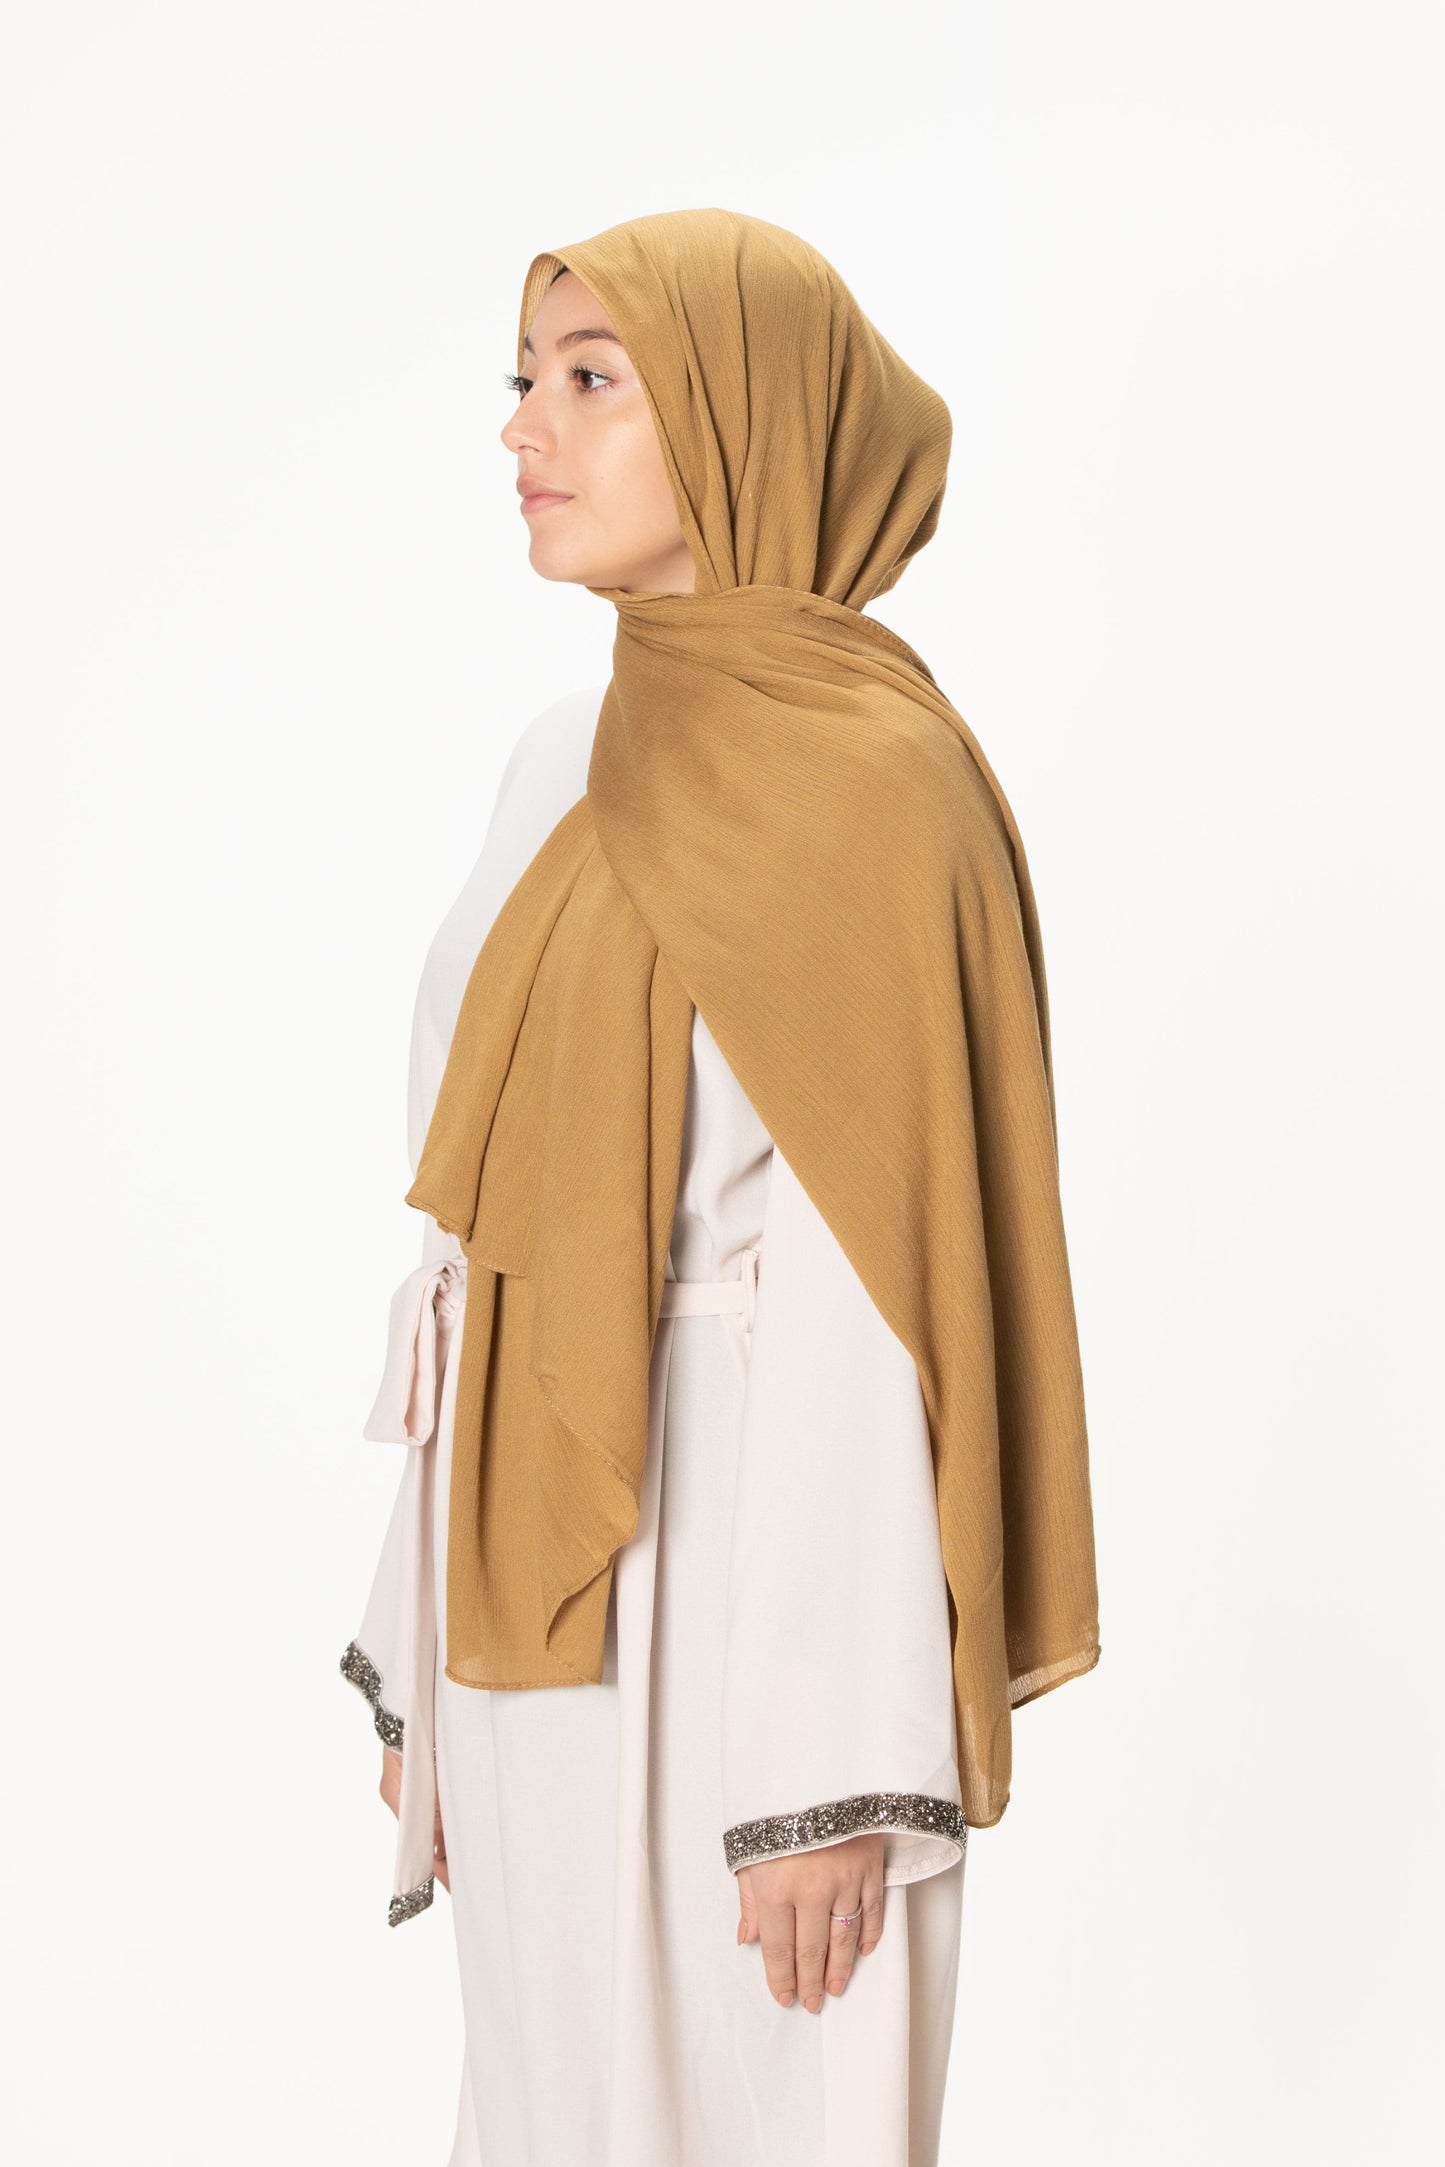 jolienisa Turmeric Modal Crinkle Hijab